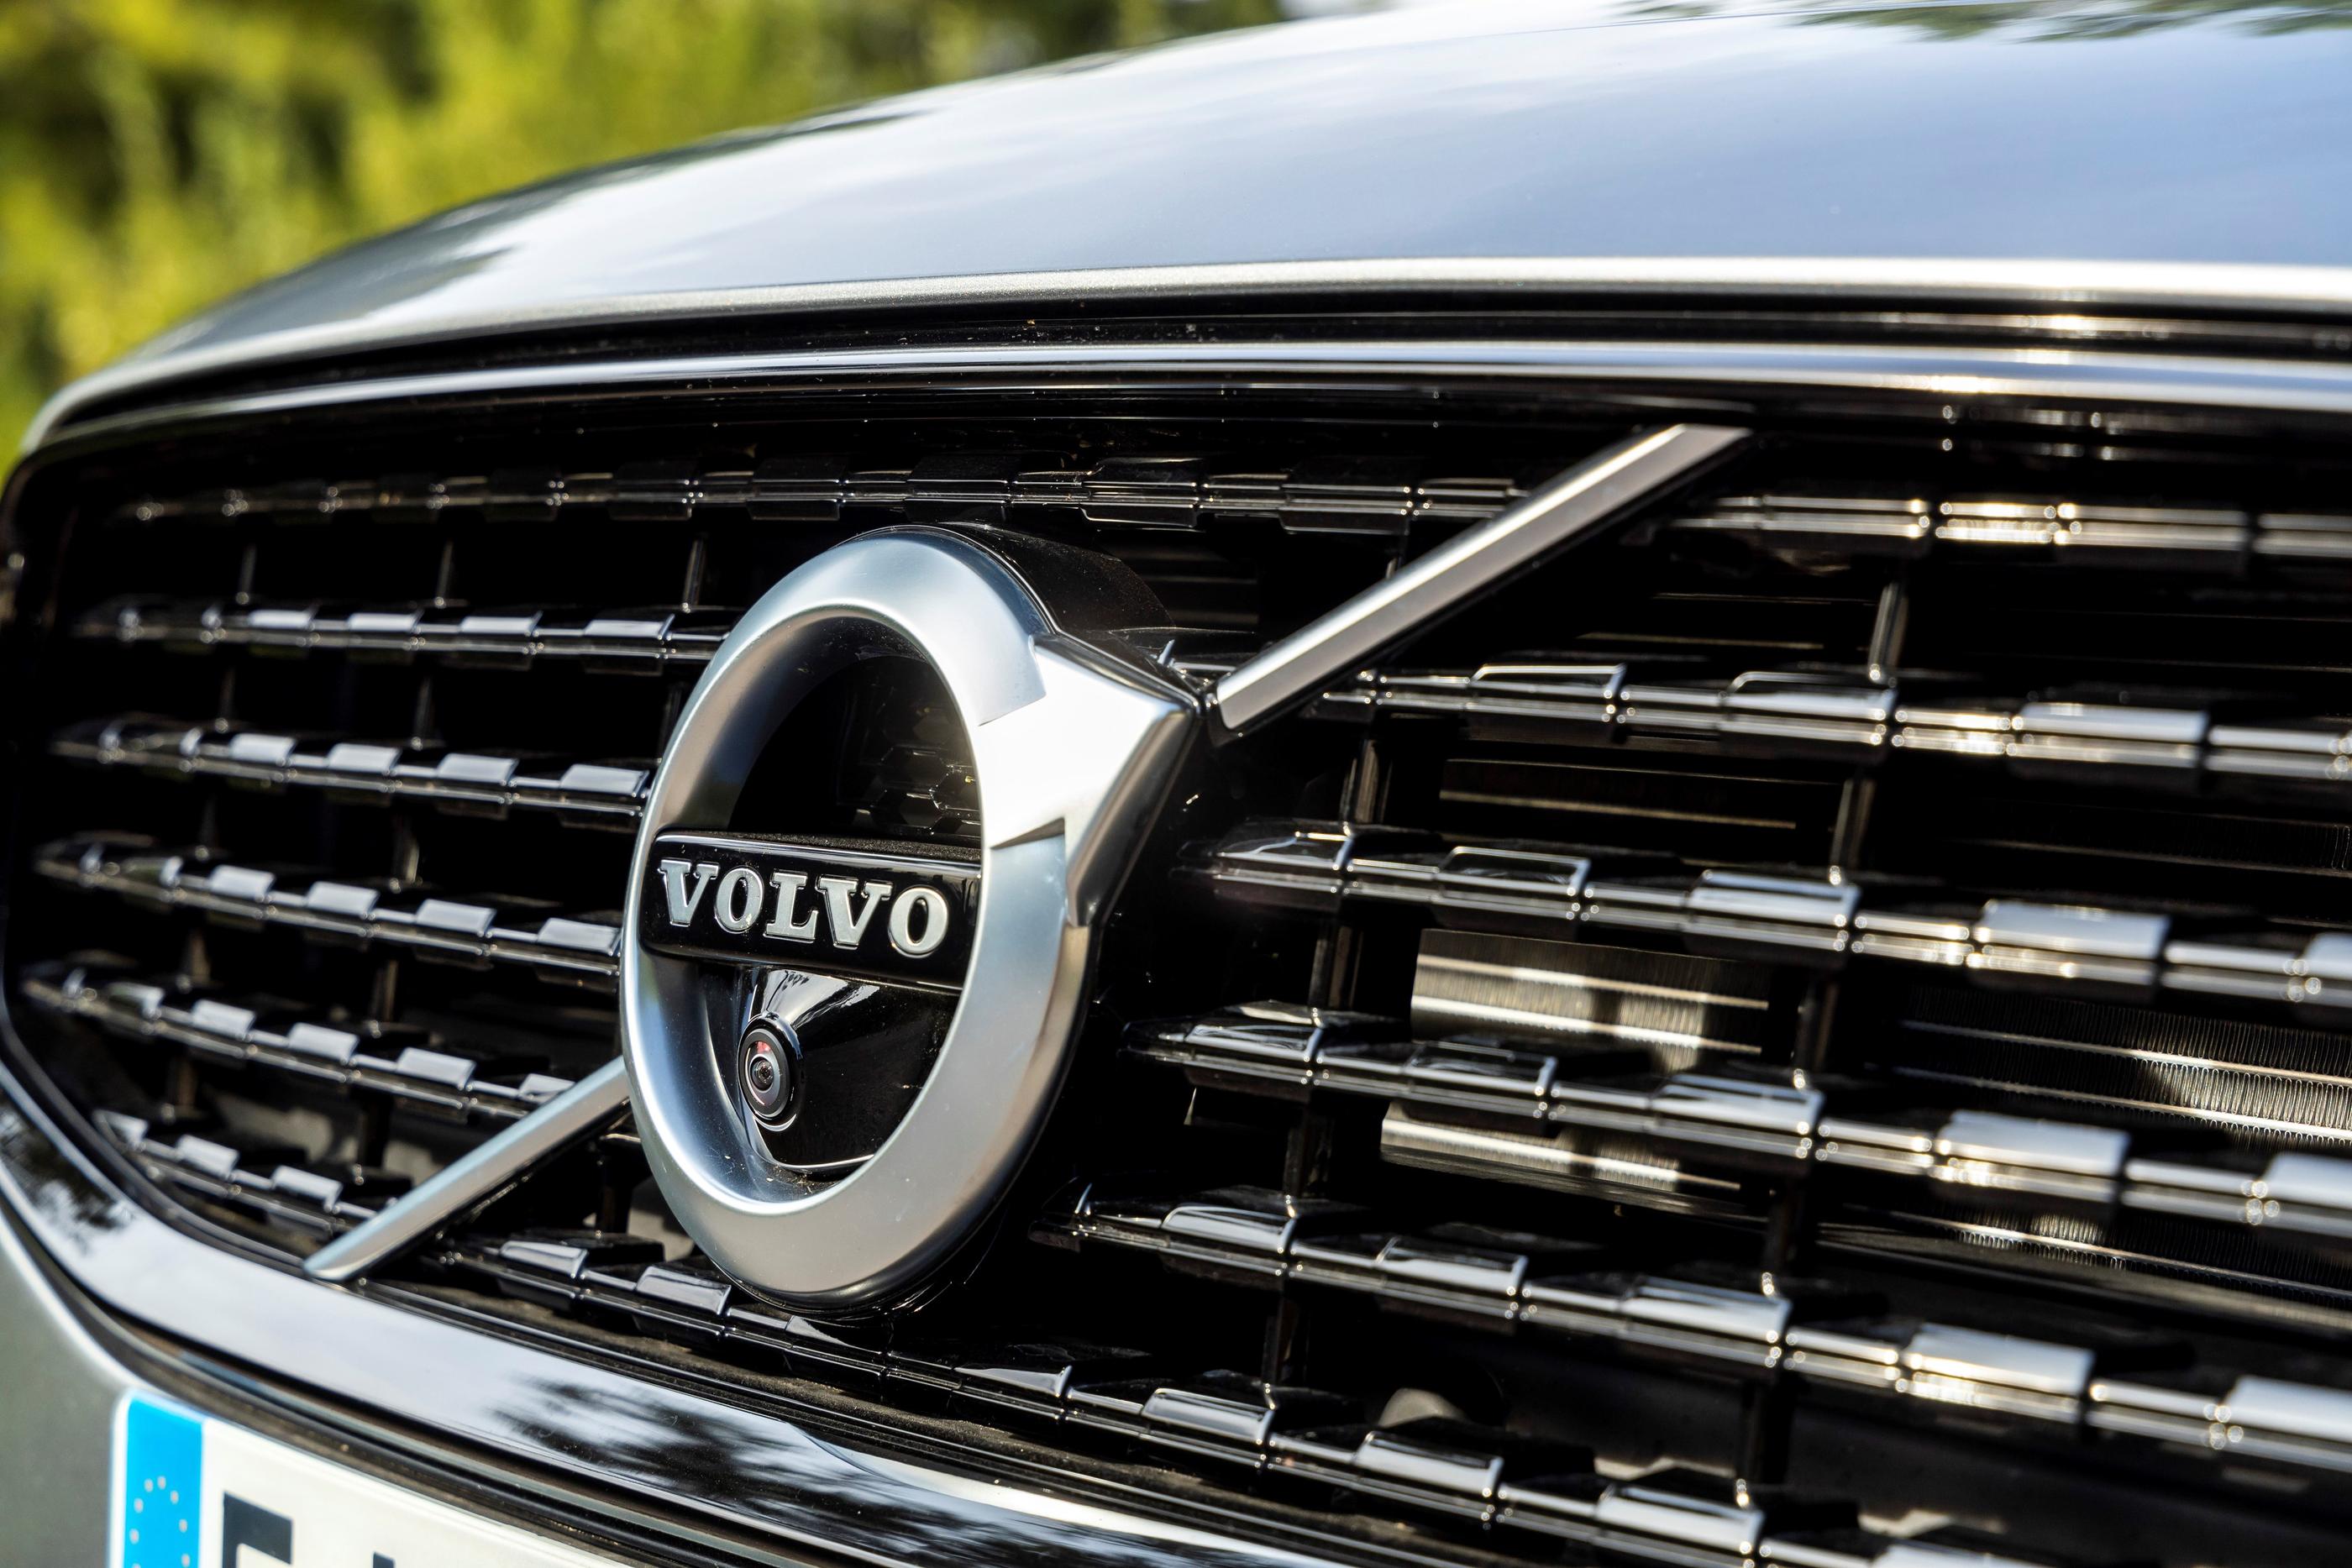 Volvo craignait que sa décision de brider ses véhicules ne lui fasse du tort. Mais «les clients se sont aperçus que cela ne changeait pas les qualités intrinsèques du véhicule», affirme la marque suédoise. Ace Team